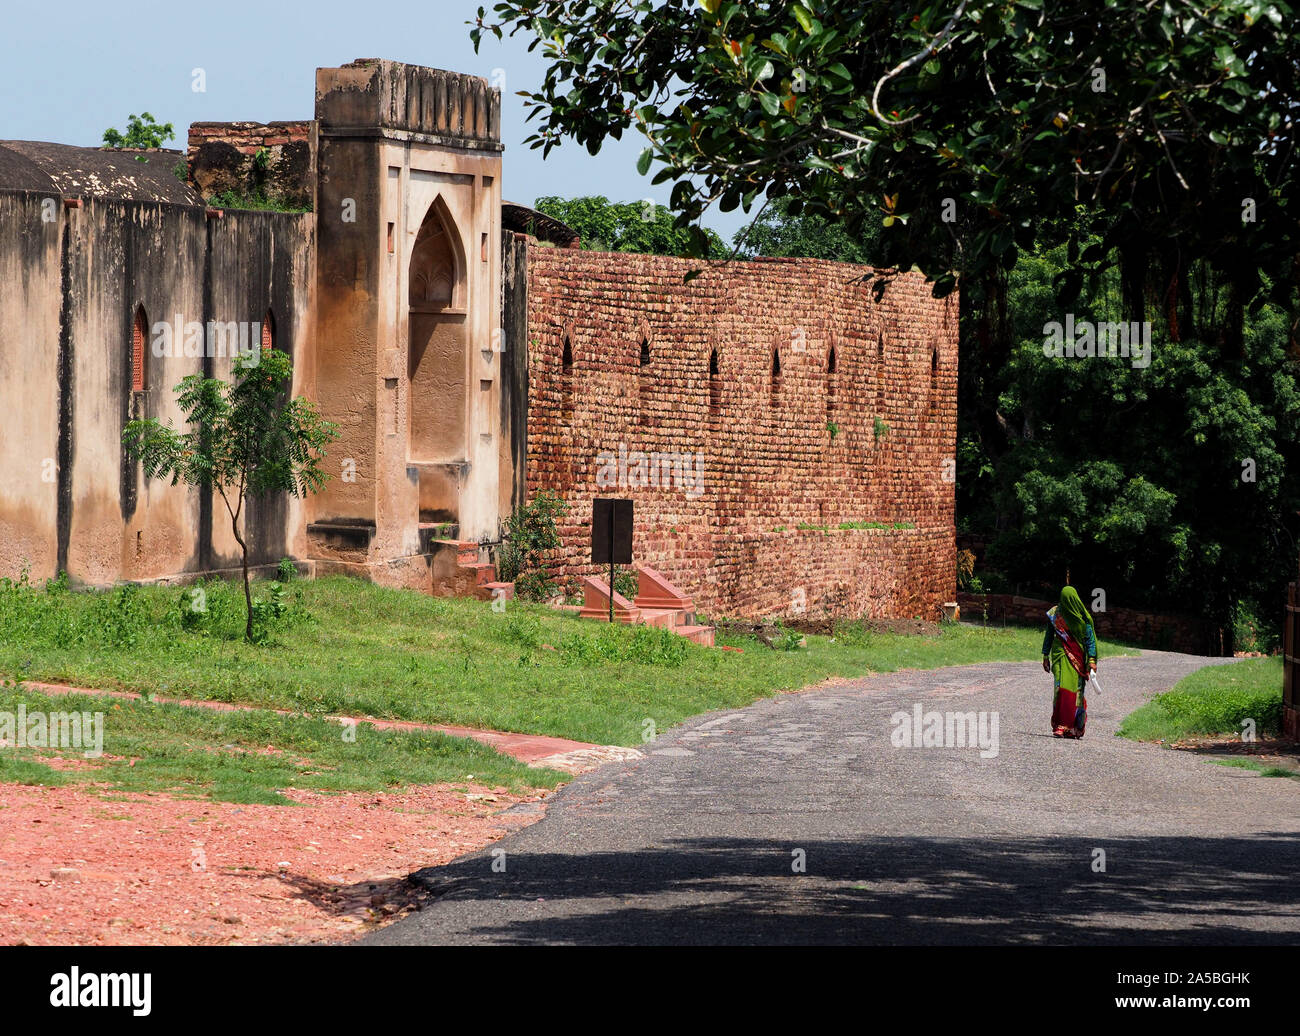 El complejo de ciudad desierta de Fatehpur Sikri, India, una vez la capital del país. Fatehpur Sikri, Agra, la ciudad en el distrito de Uttar Pradesh, India Foto de stock